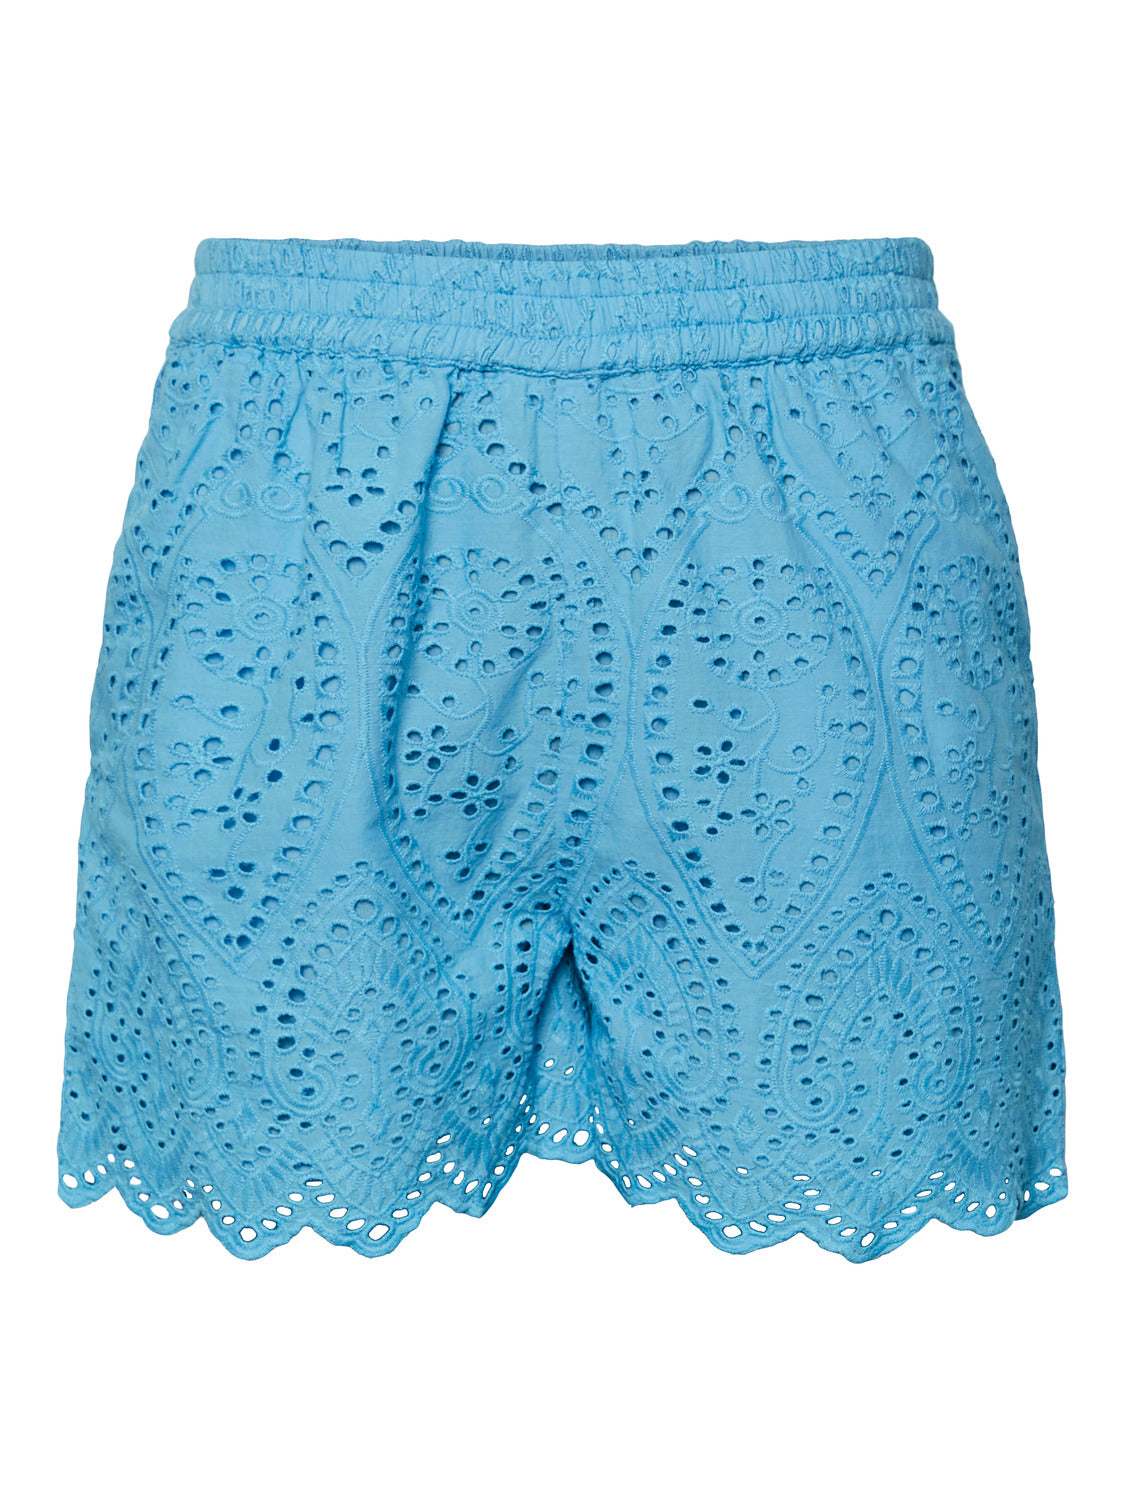 YASHOLI Shorts - Ethereal Blue